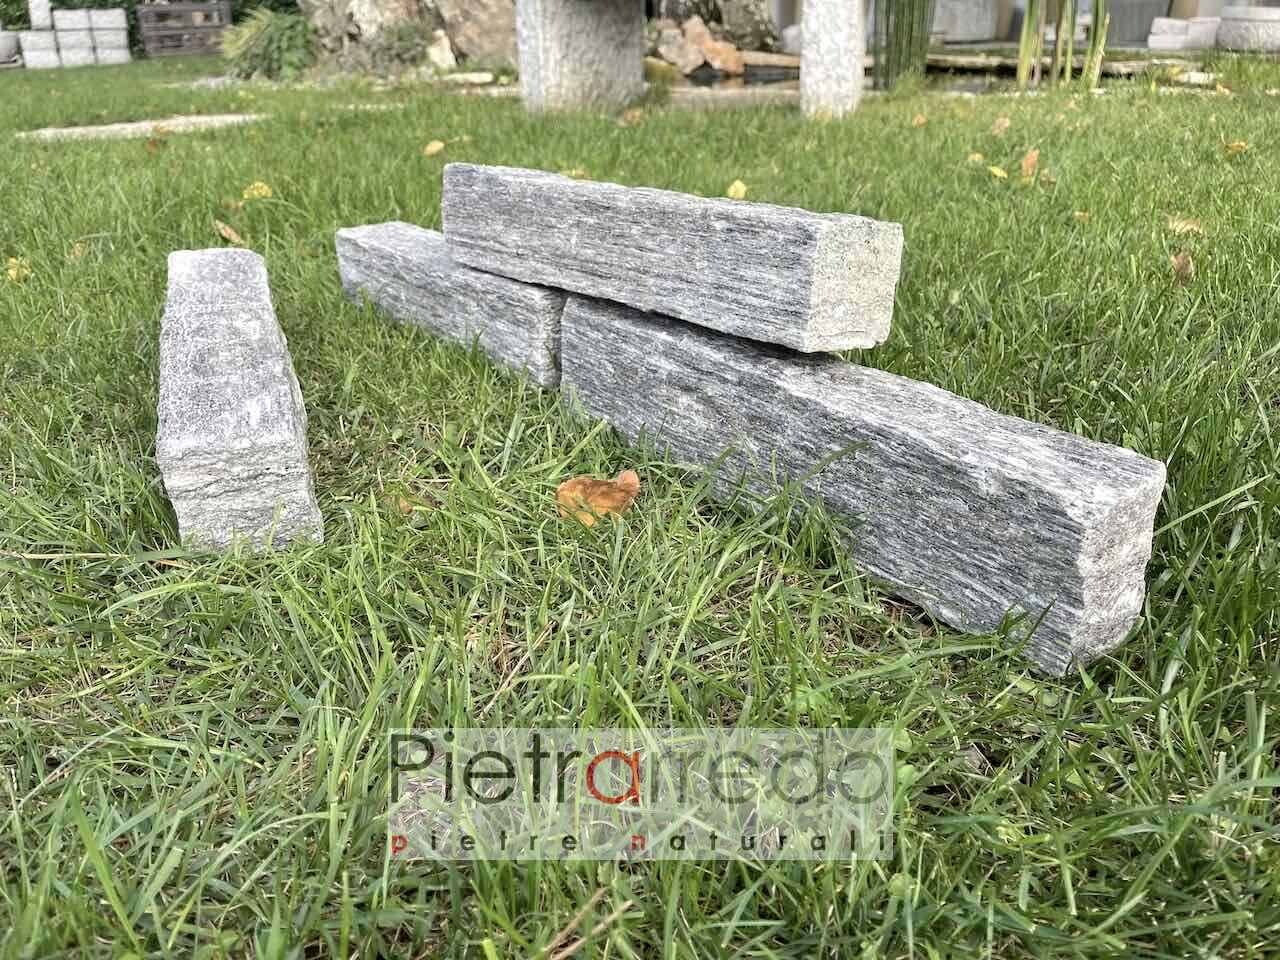 bordure blocchetti mattoni in pietra grigia per aiuole prati pietrarredo milano prezzo costo